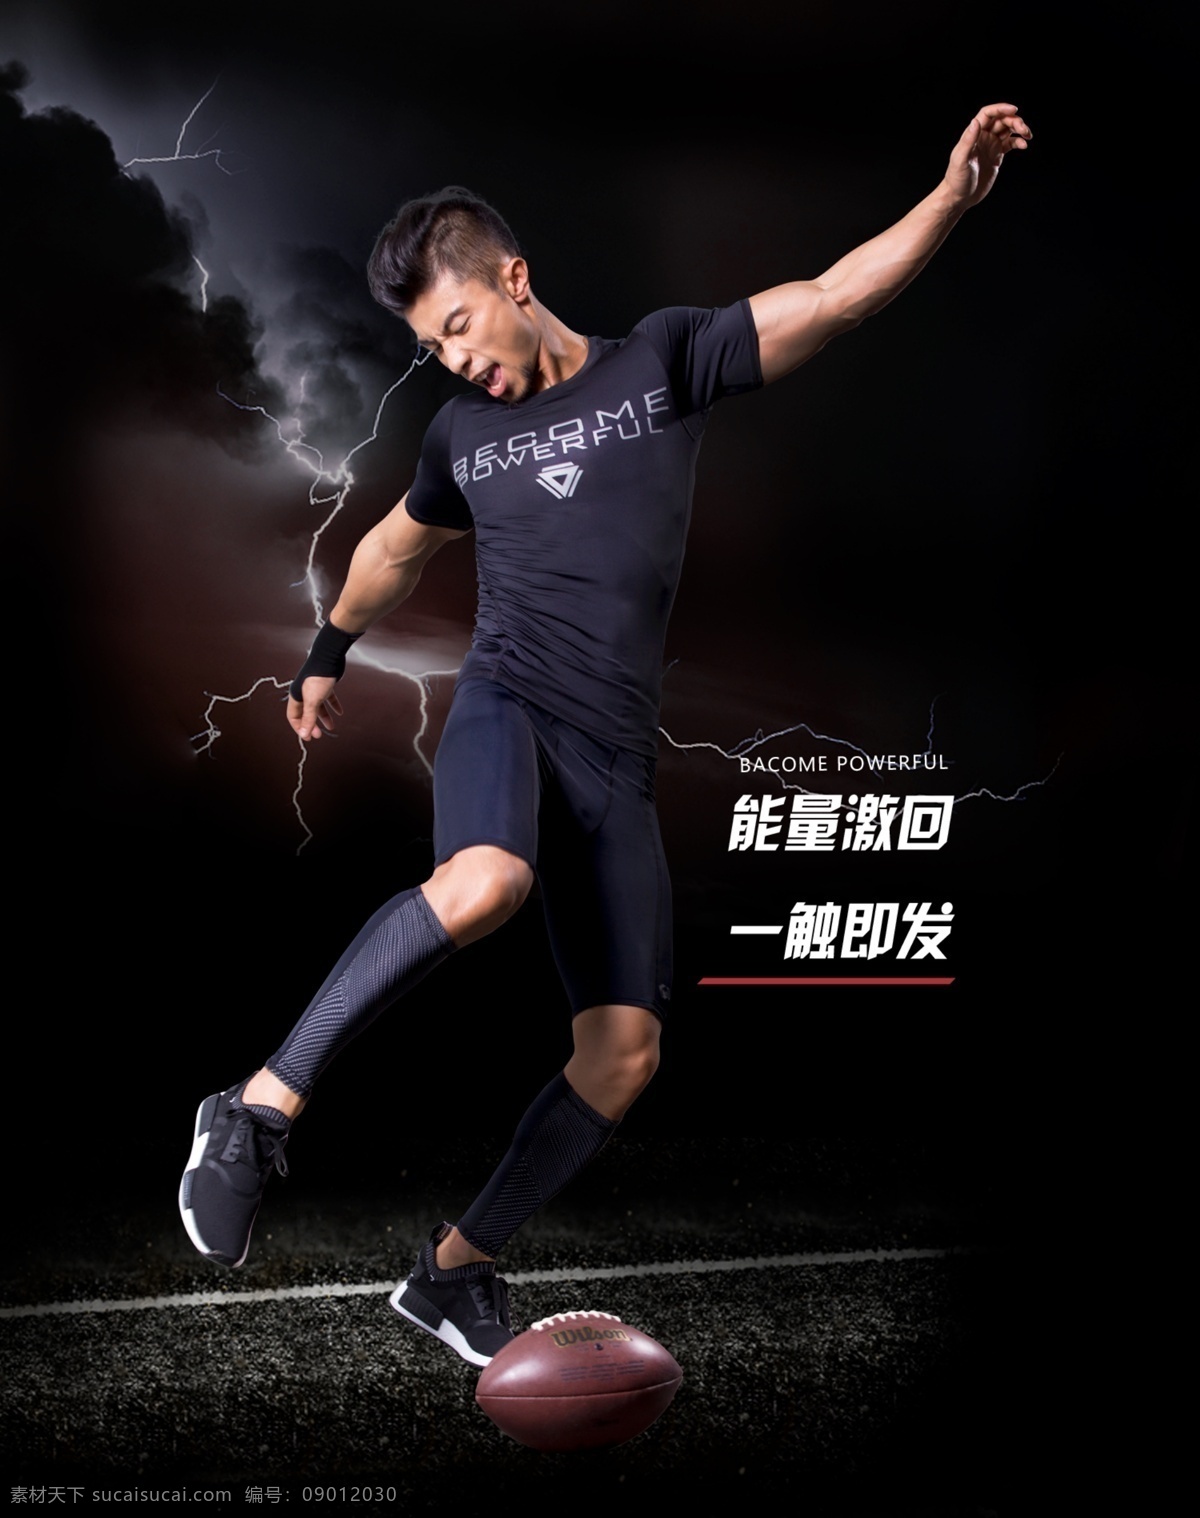 健身套装反光 黑色海报 健身海报 踢球 足球 激情海报 闪电背景 健身宣传单 健身俱乐部 健身运动 健身广告 分层